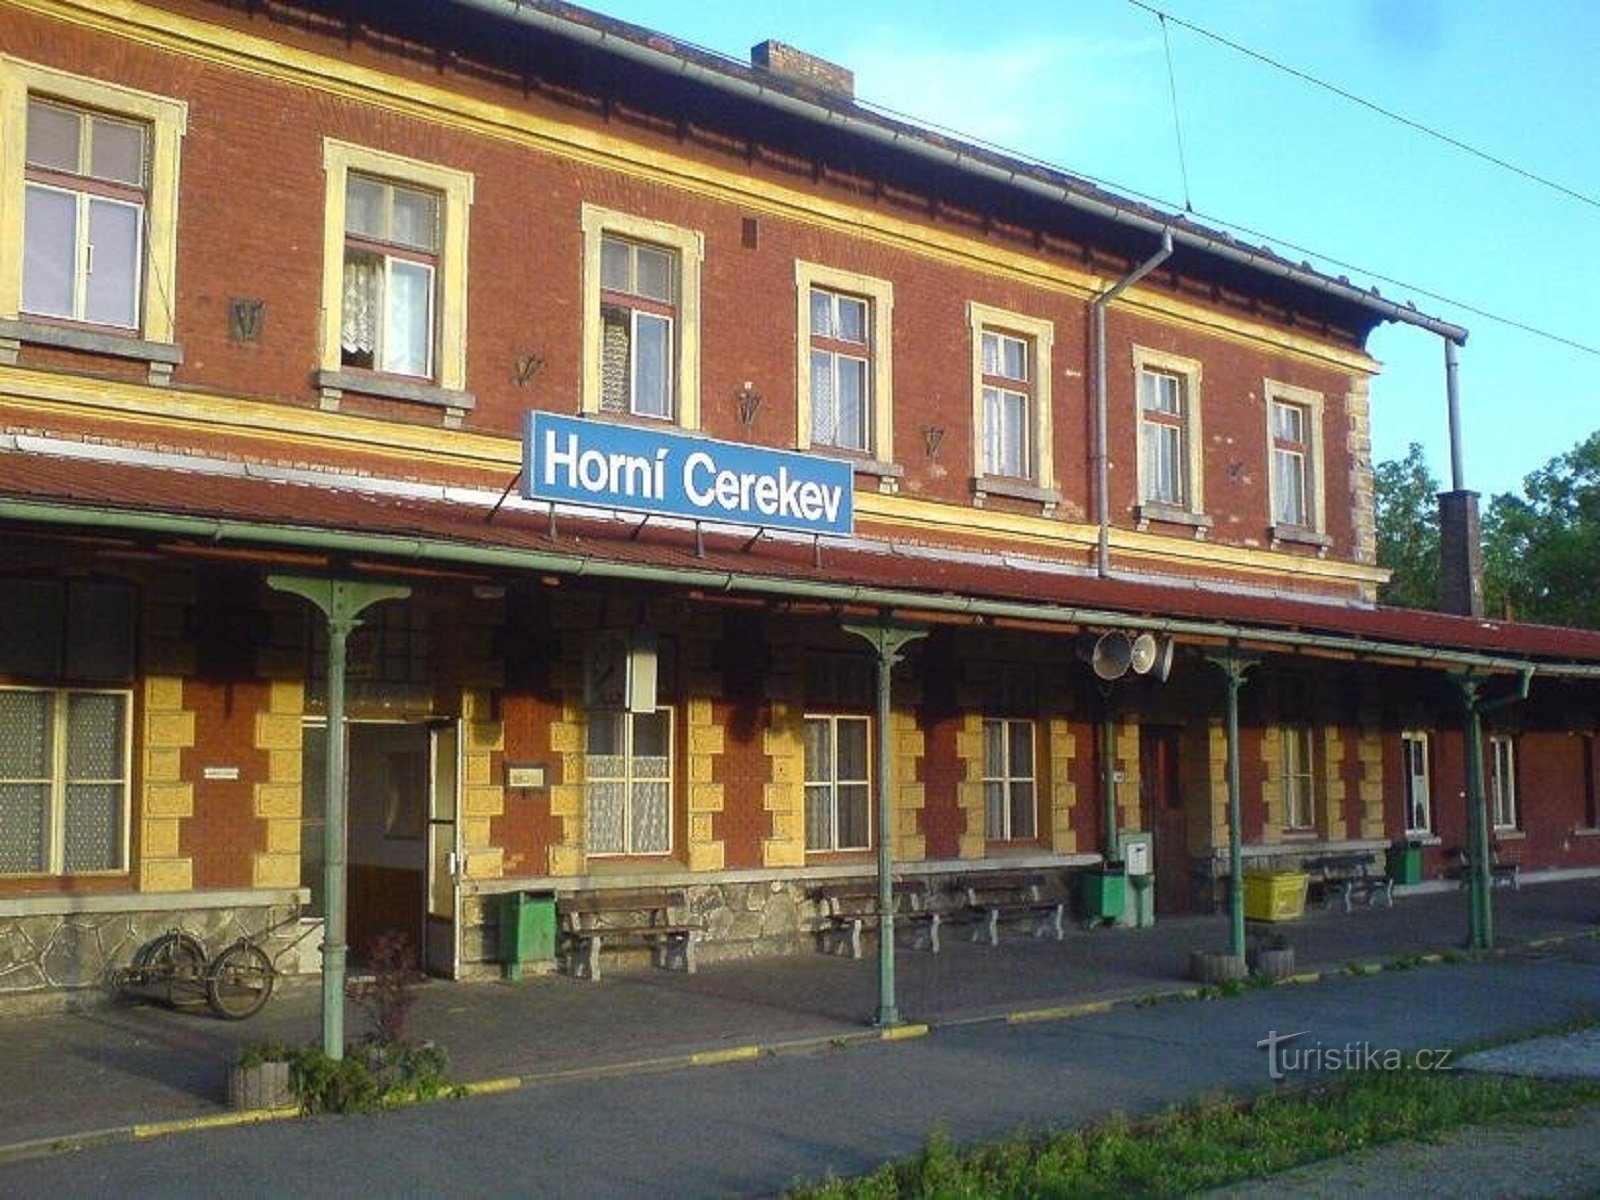 1. Train station in Horní Cerekv.